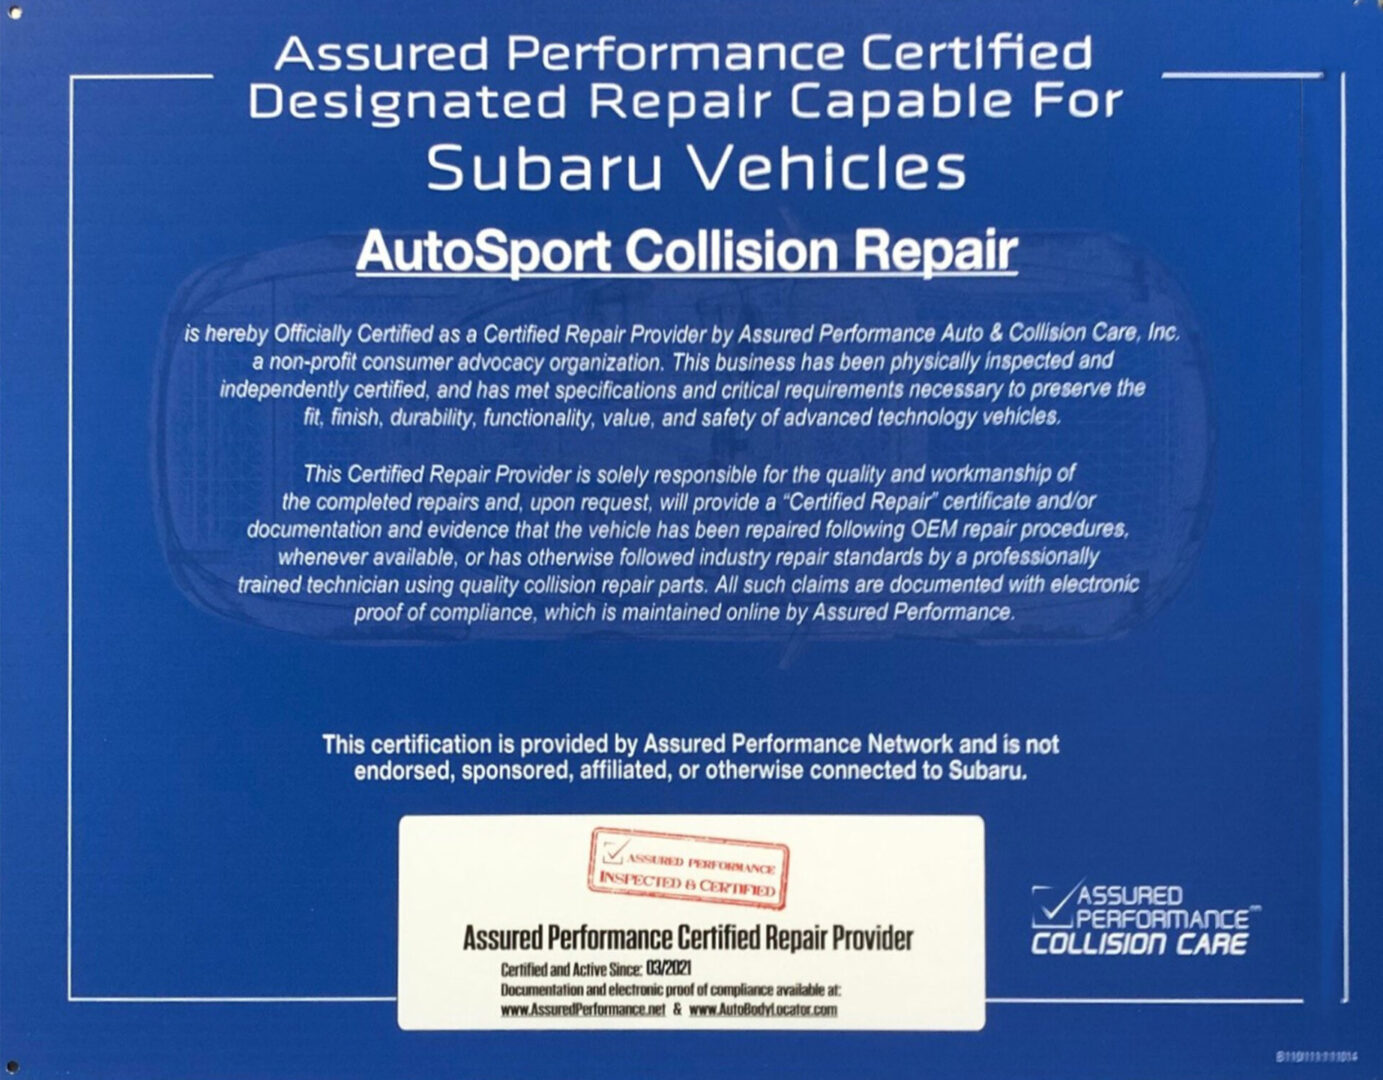 https://autosportcollisionrepair.com/wp-content/uploads/2021/07/Subaru-1-scaled.jpg